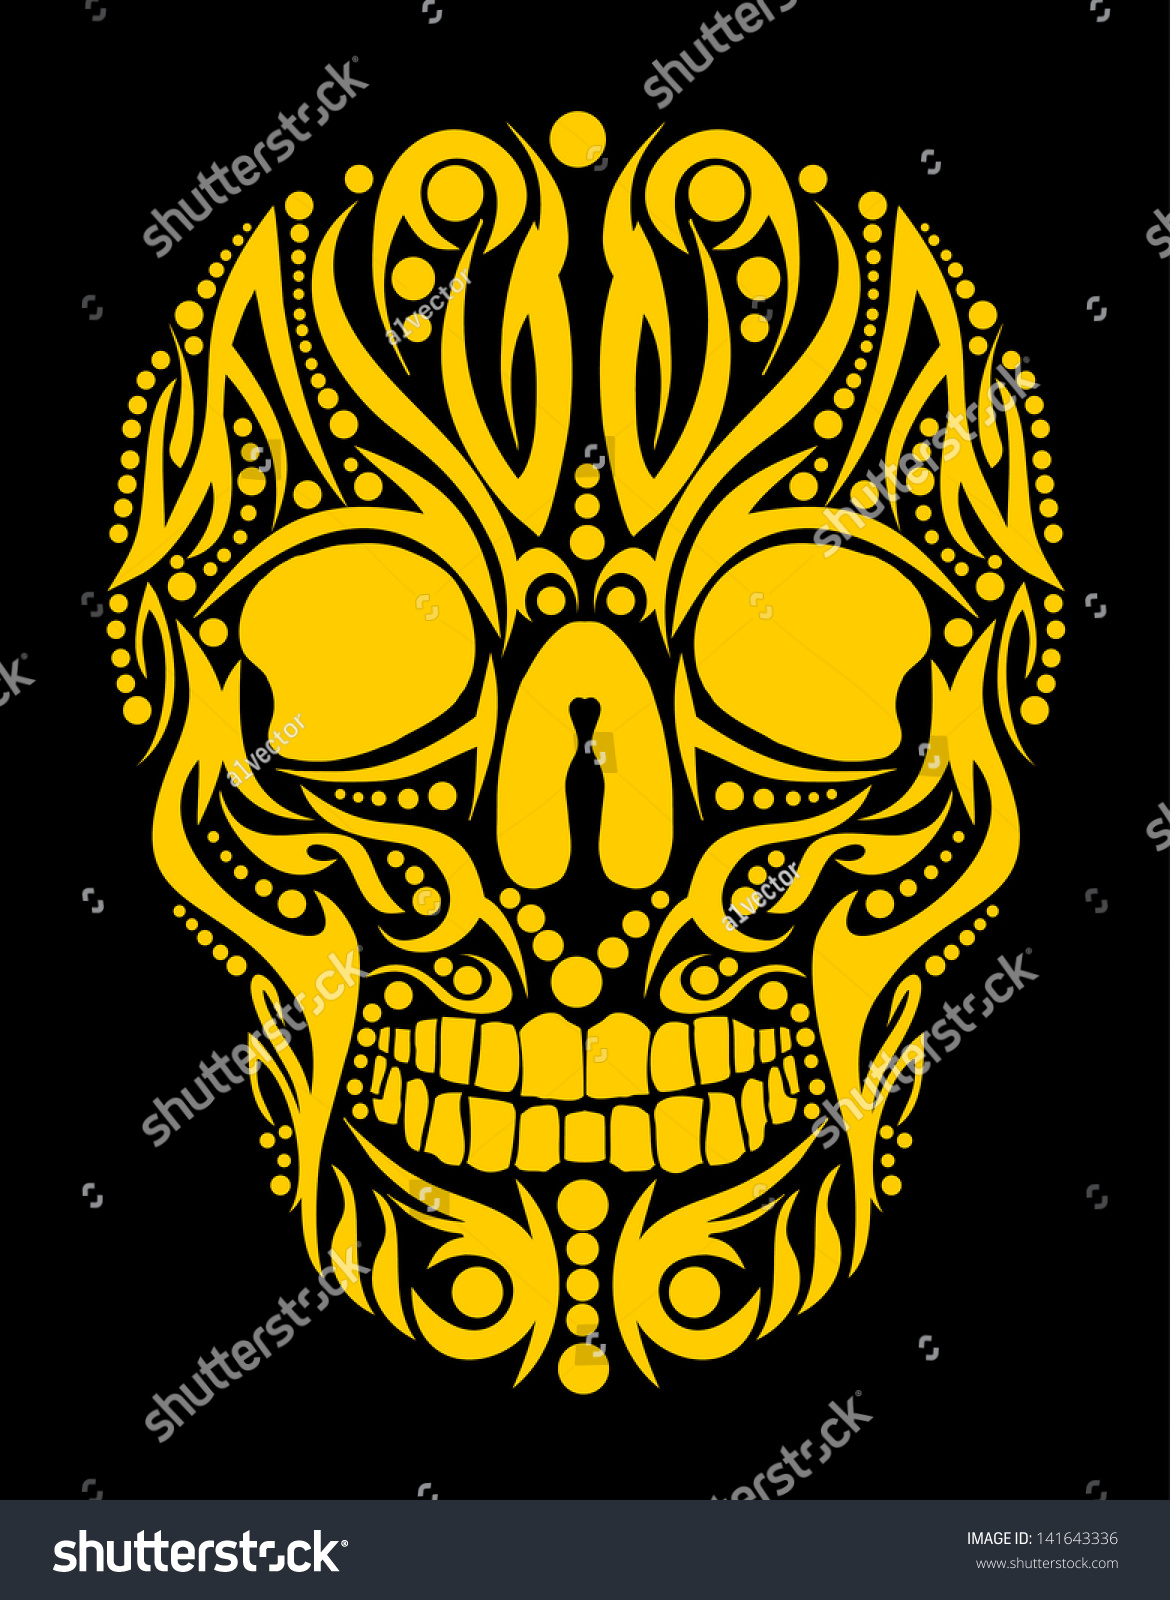 Tattoo Tribal Skull Vector Art Stock Vector Royalty Free 141643336